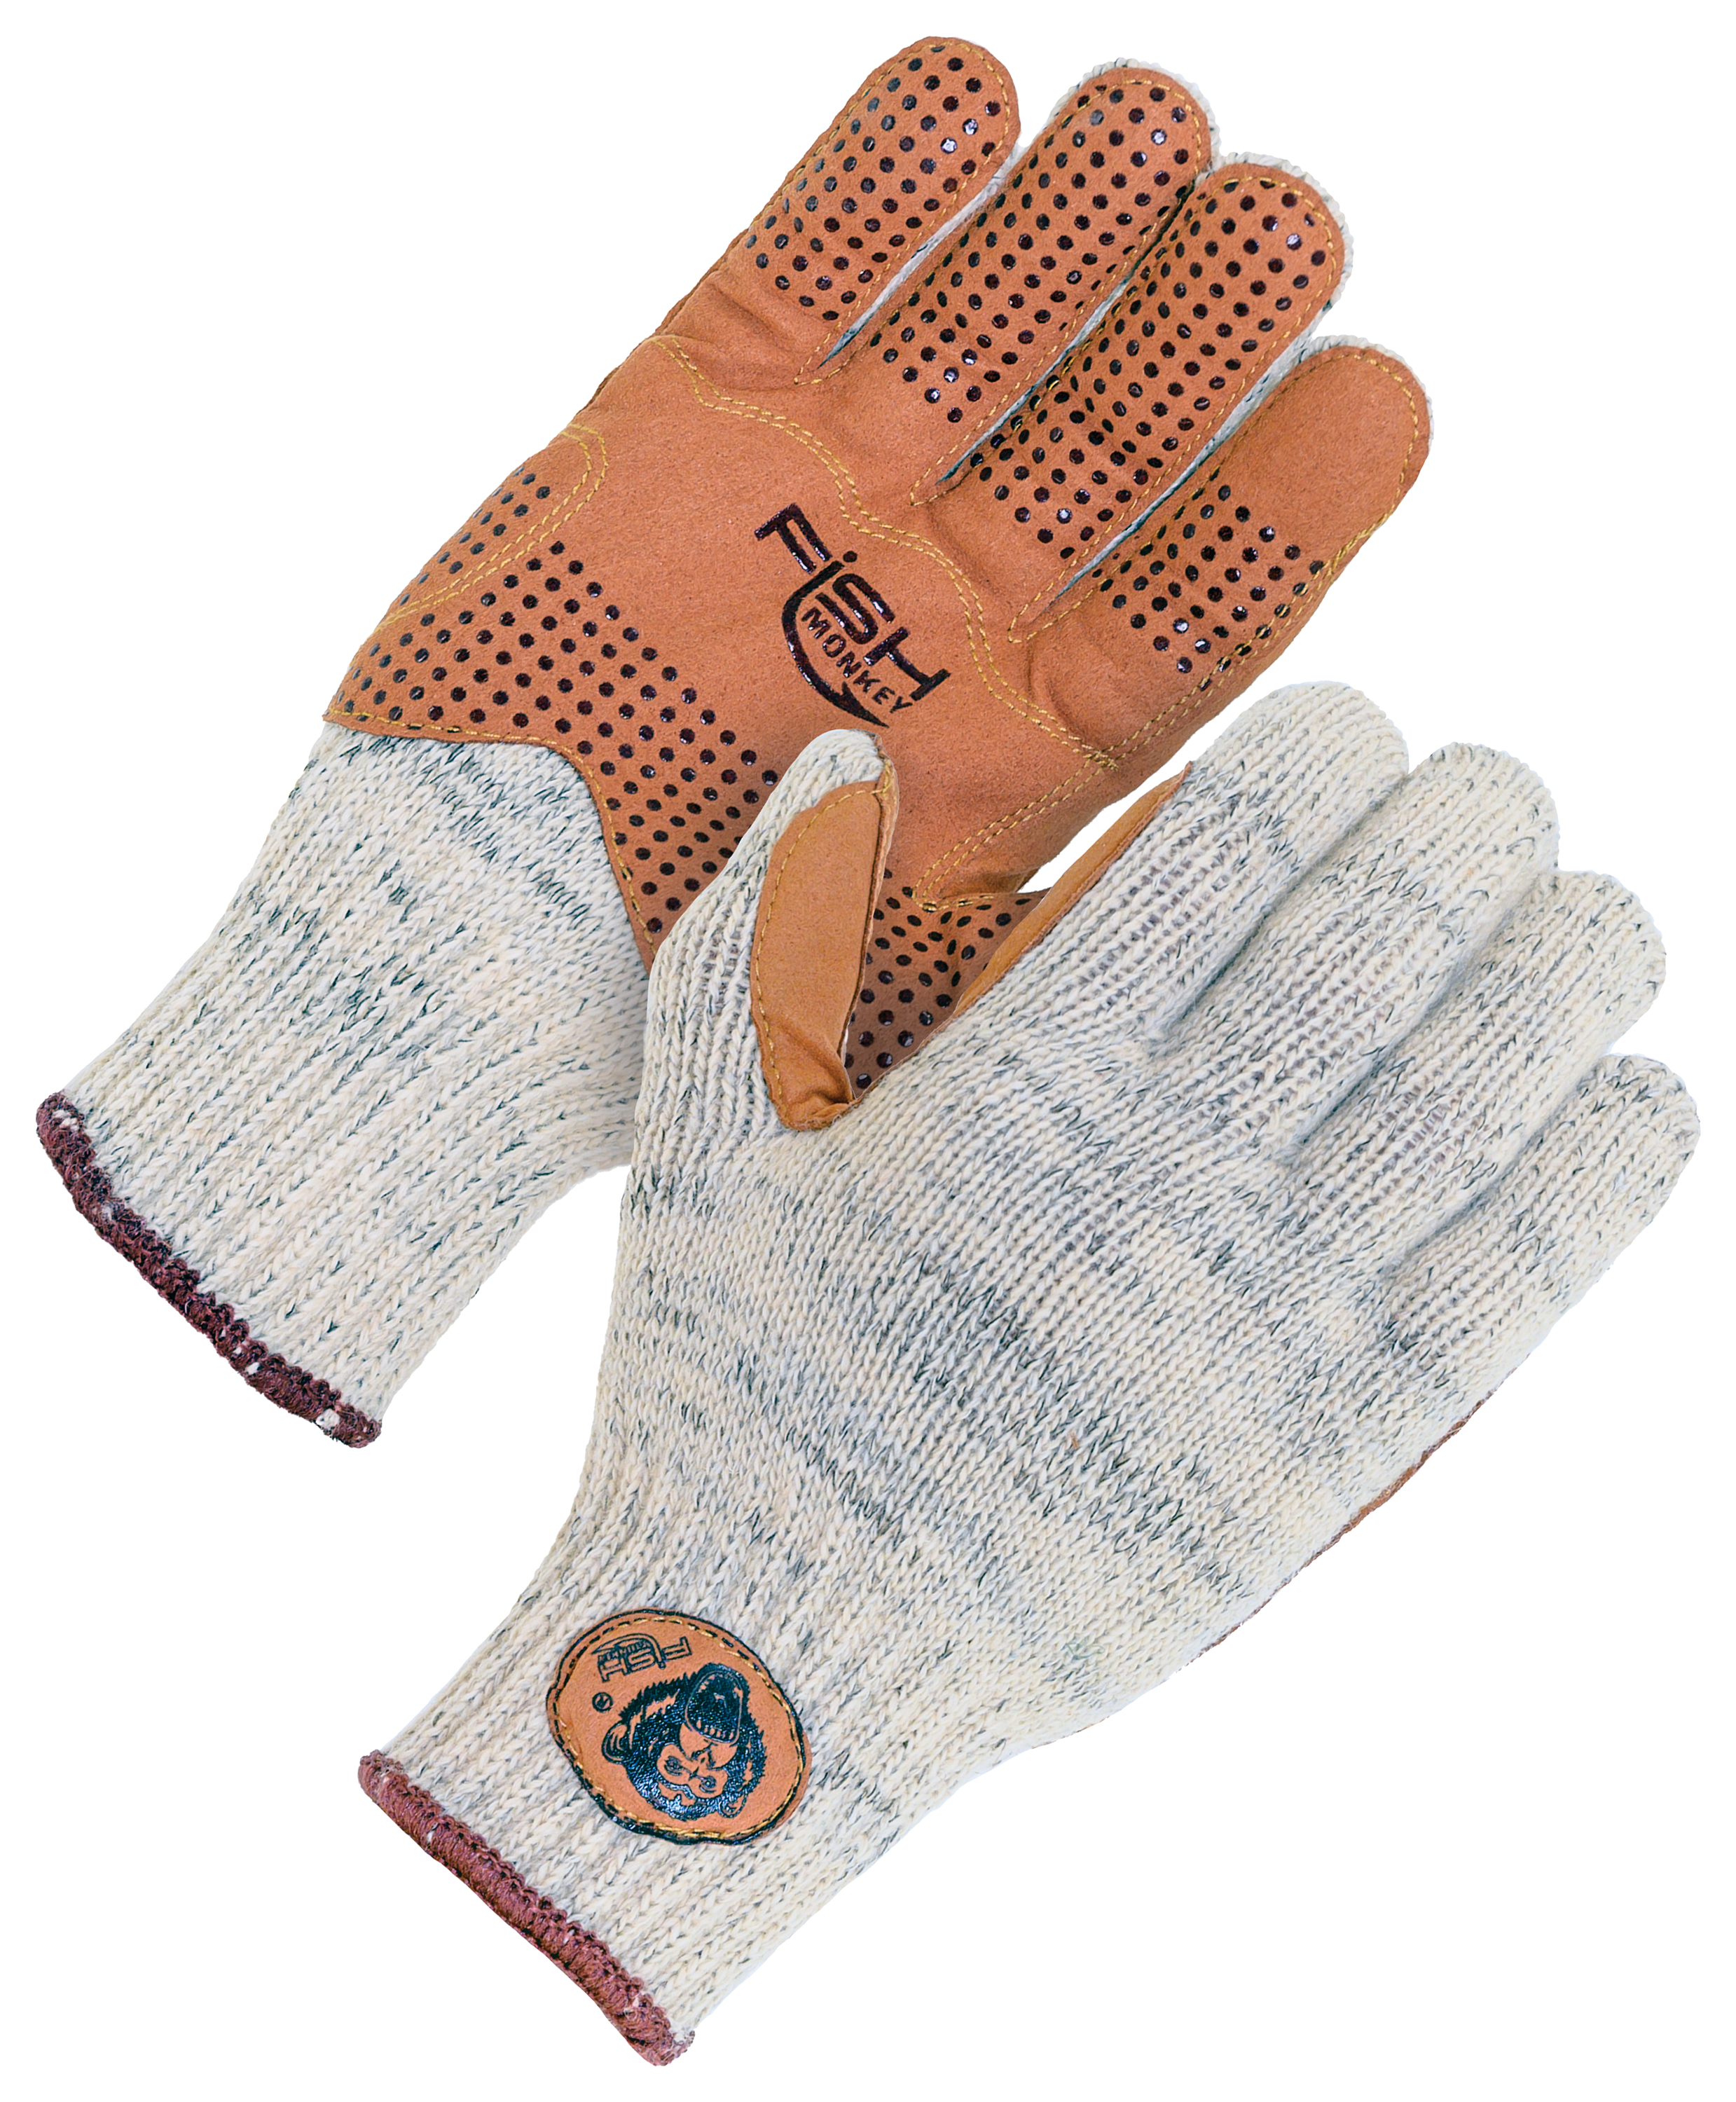 Wool Half-Finger Glove